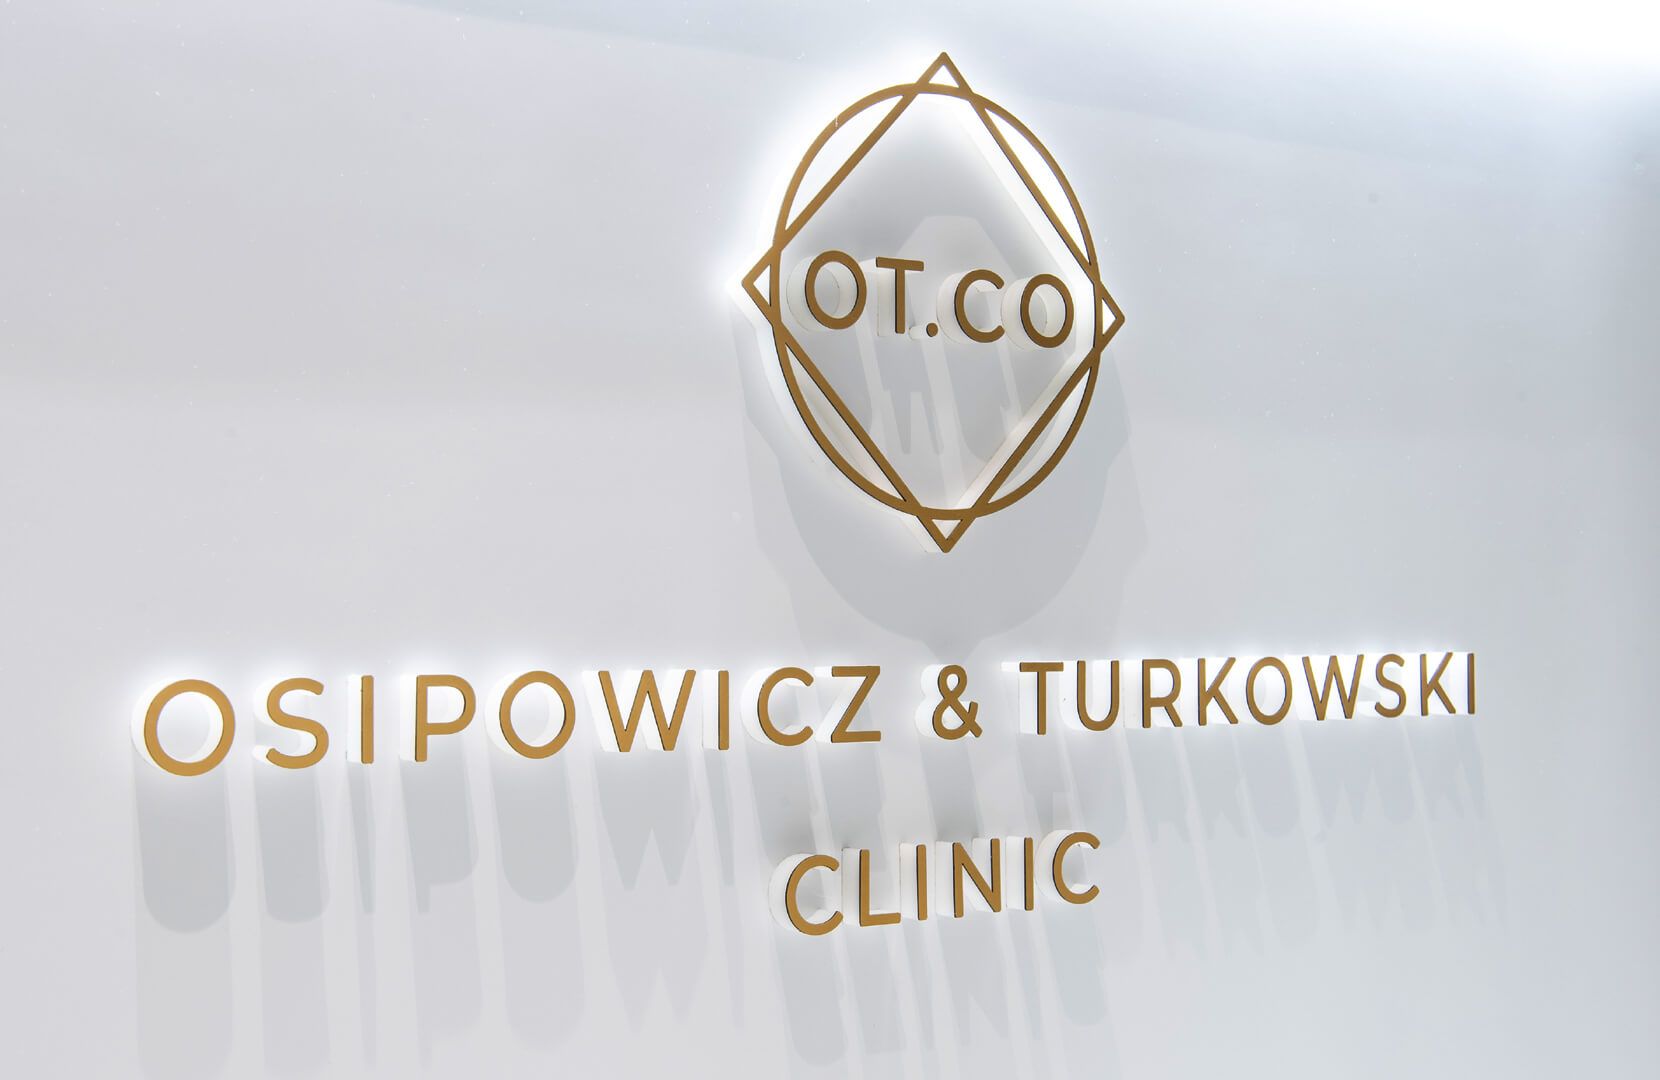 Litery przestrzenne w recepcji OT.CO Clinic - Złote litery przestrzenne wraz z logo w recepcji OT.CO Clinic